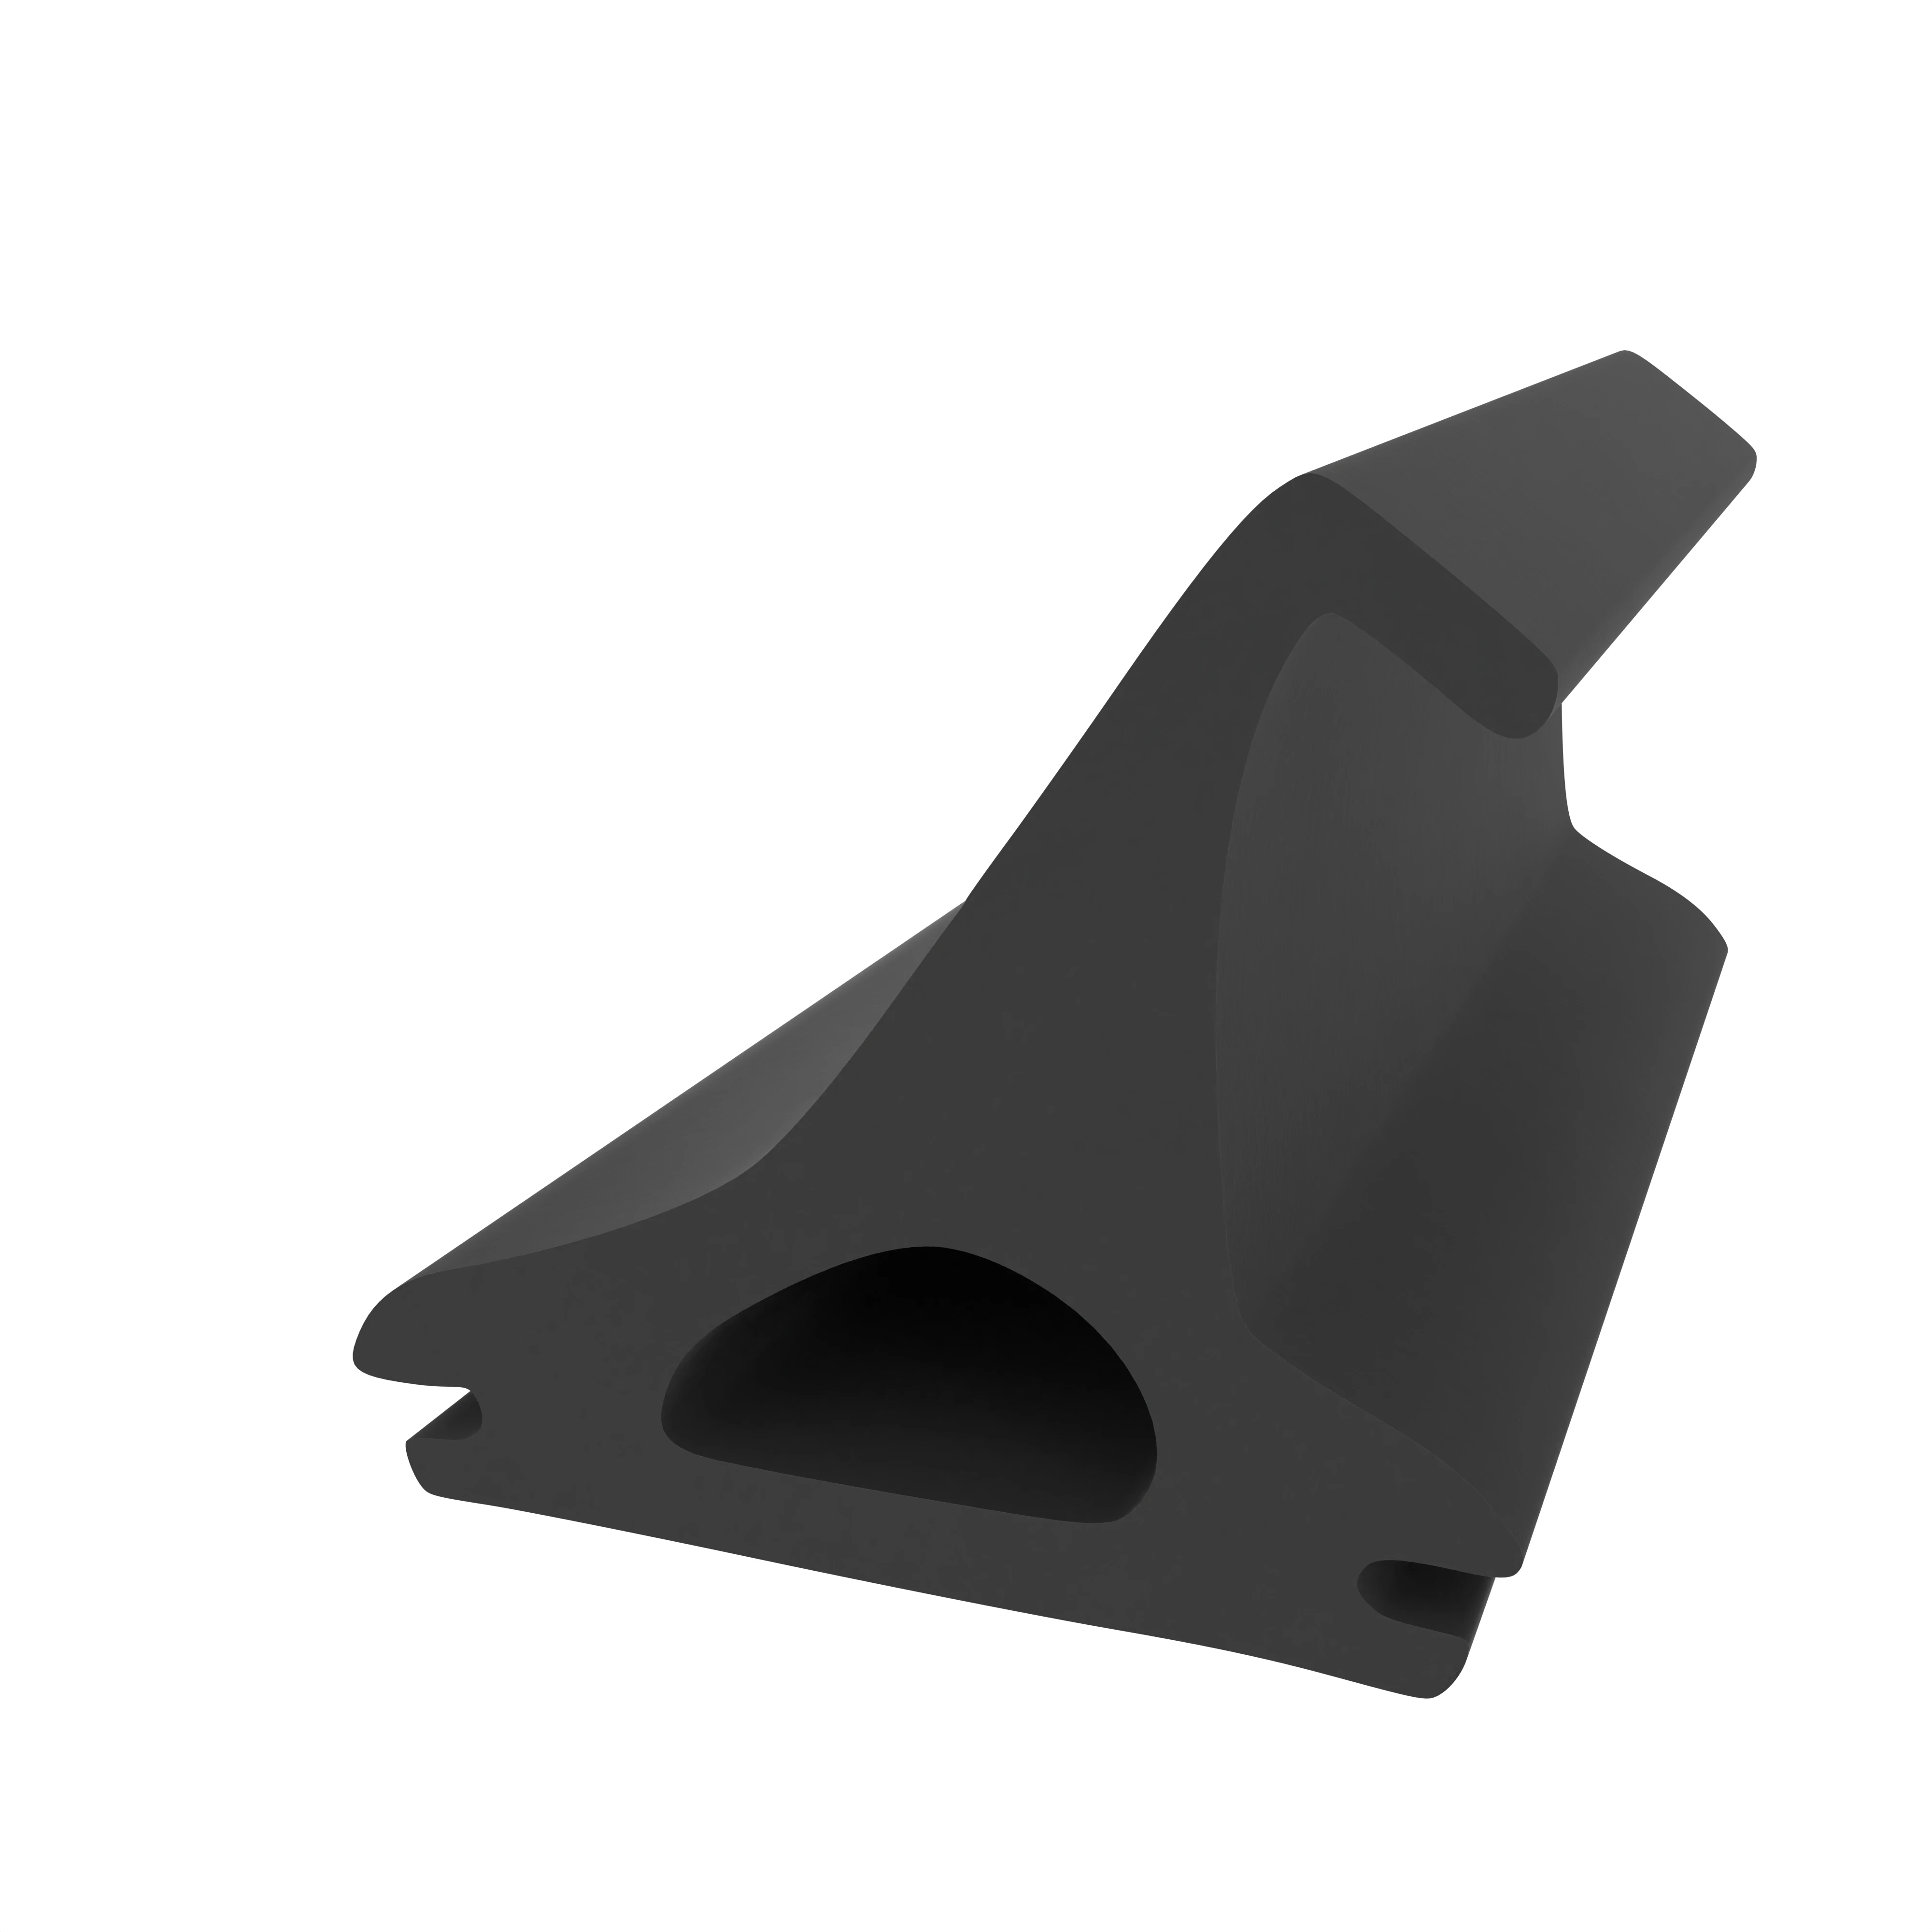 Mitteldichtung für Metall- und Alufenster | 21 mm Höhe | Farbe: schwarz